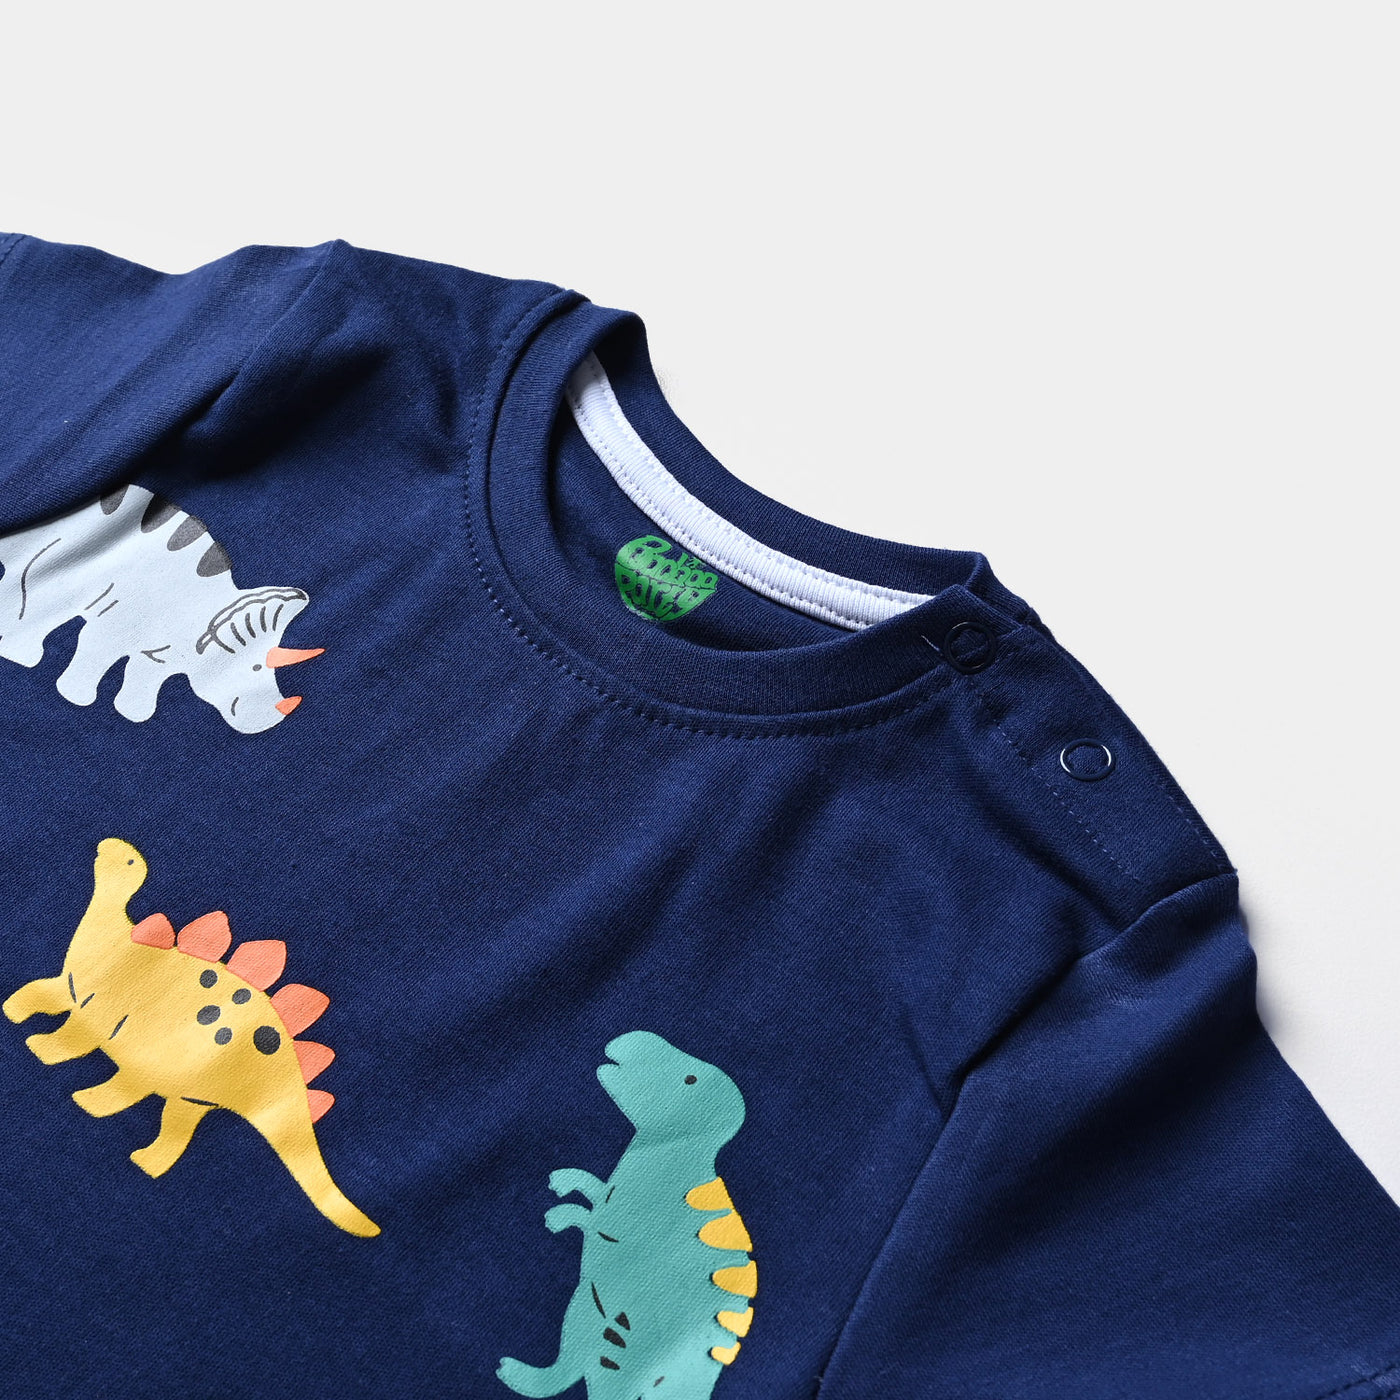 Infant Boys Cotton Jersey 2 Piece Set Dinosaurs- True Navy